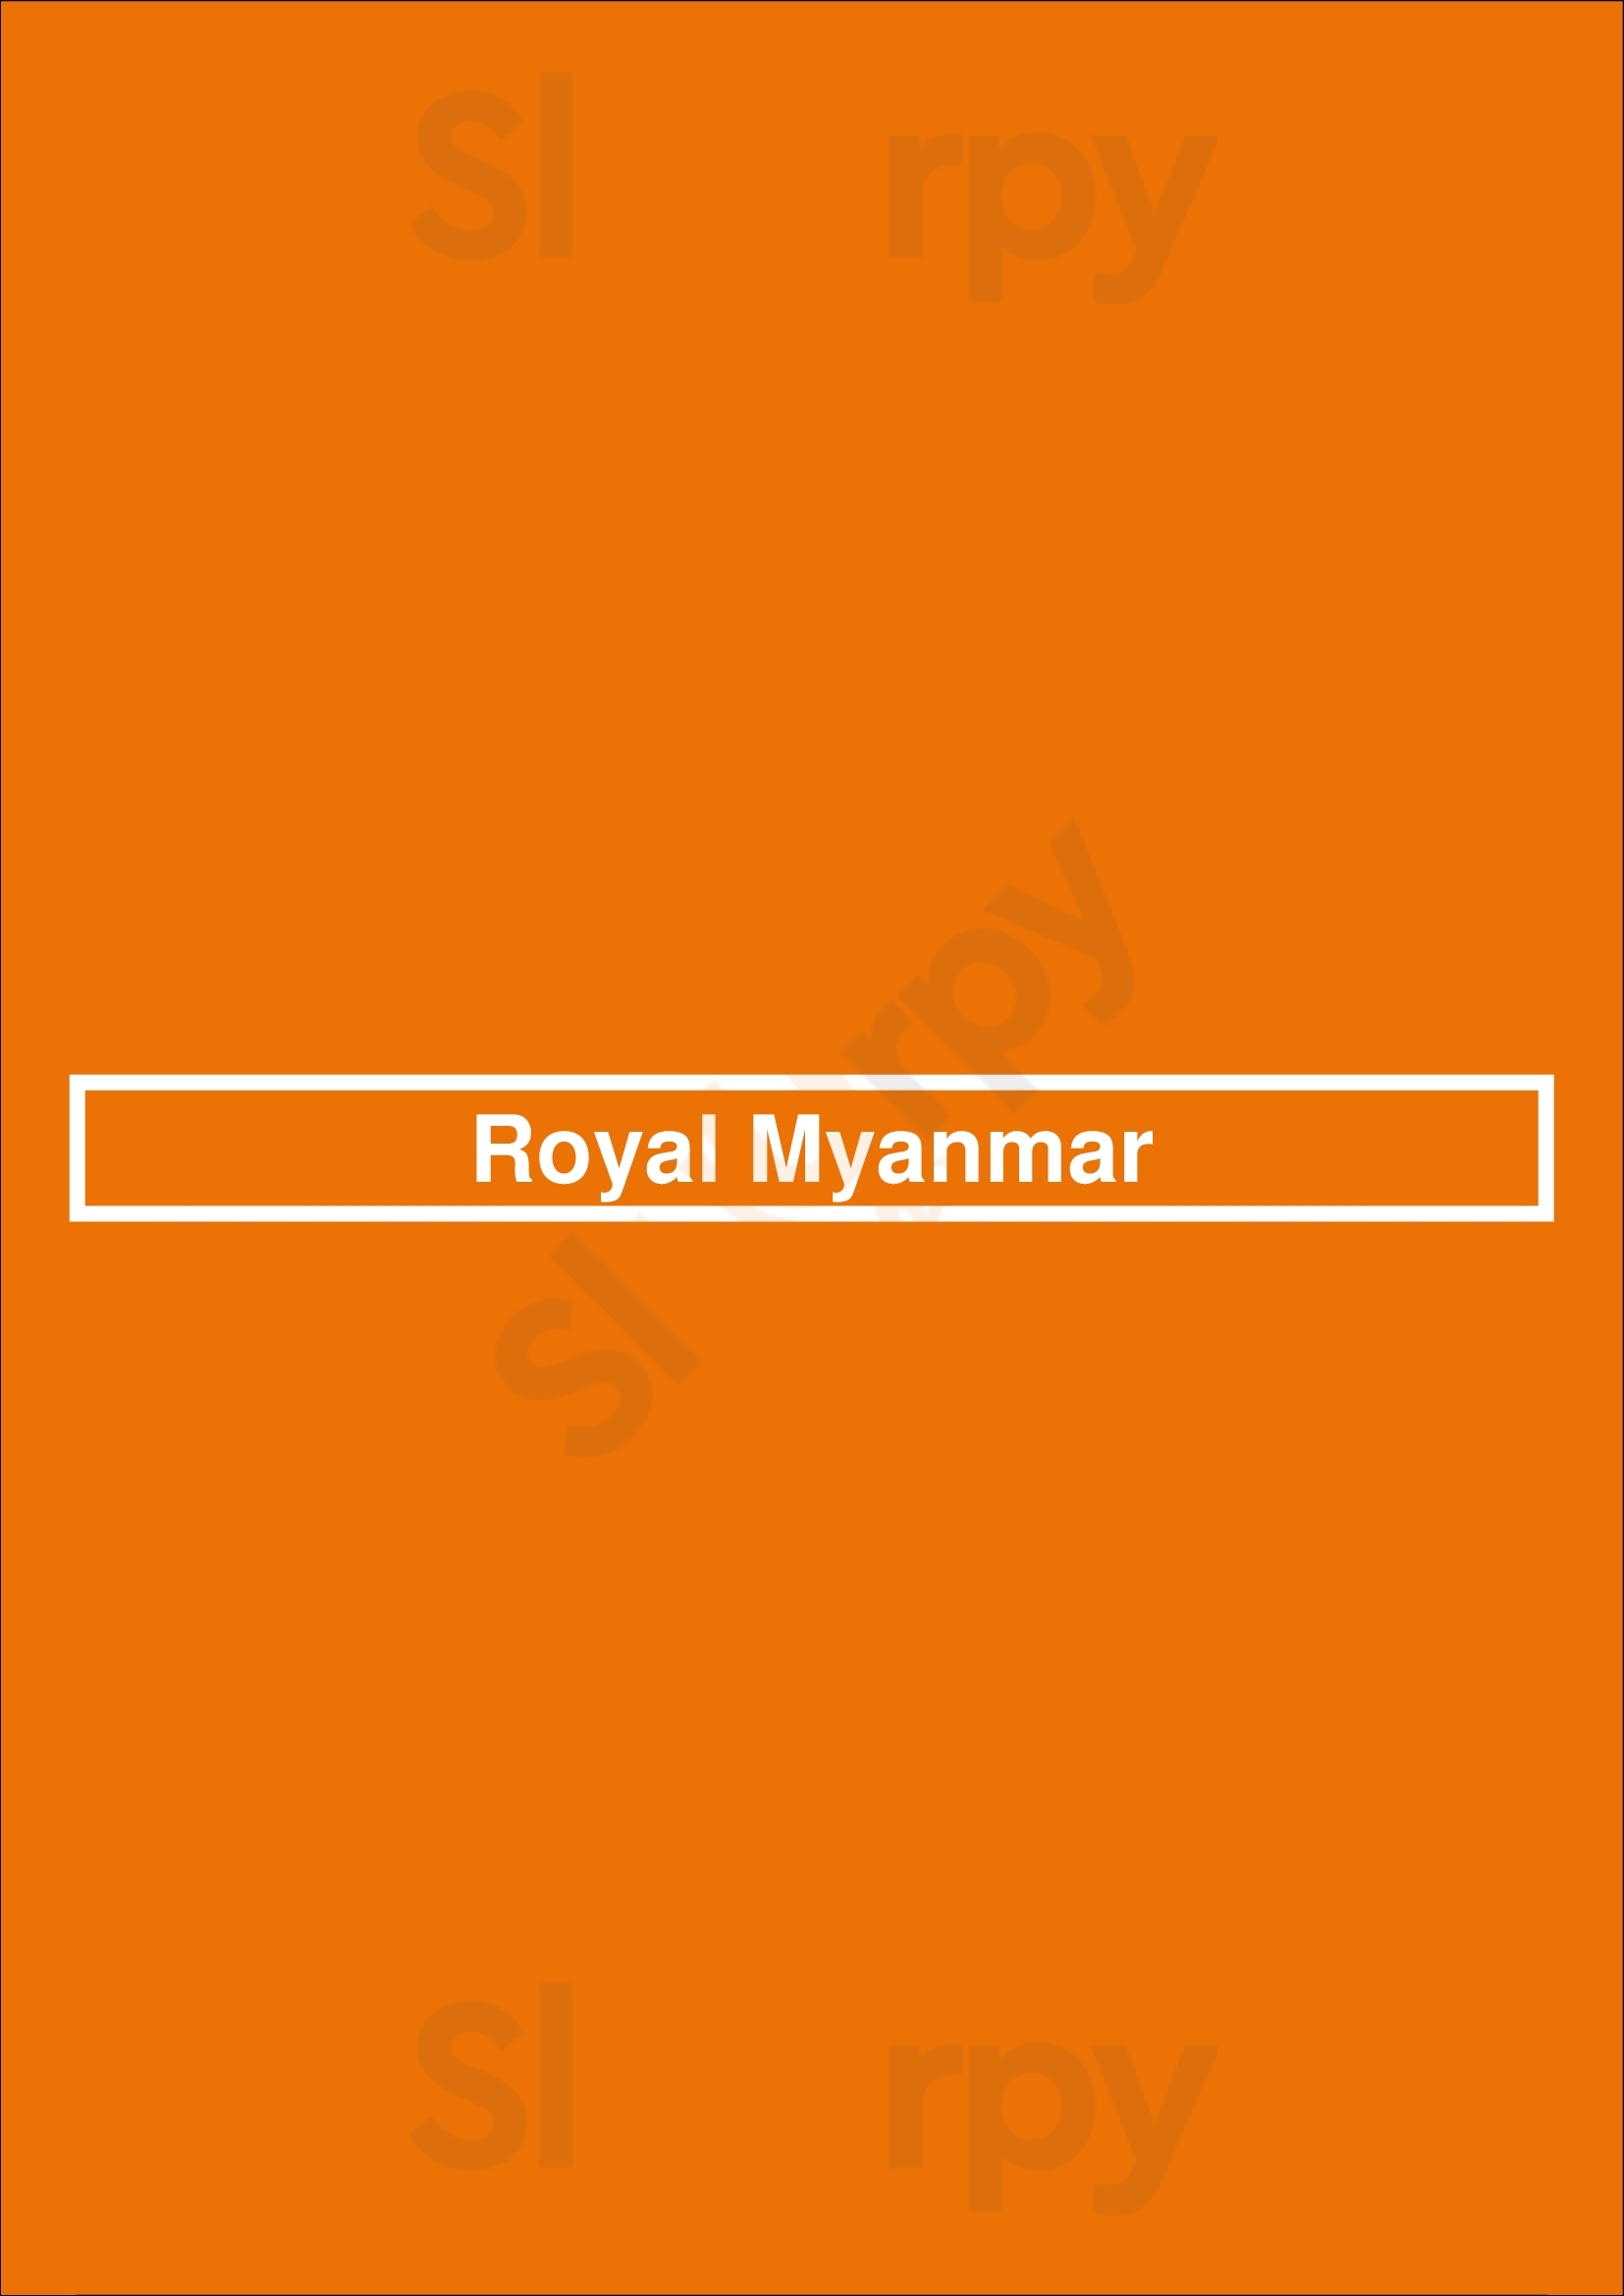 Royal Myanmar Toronto Menu - 1